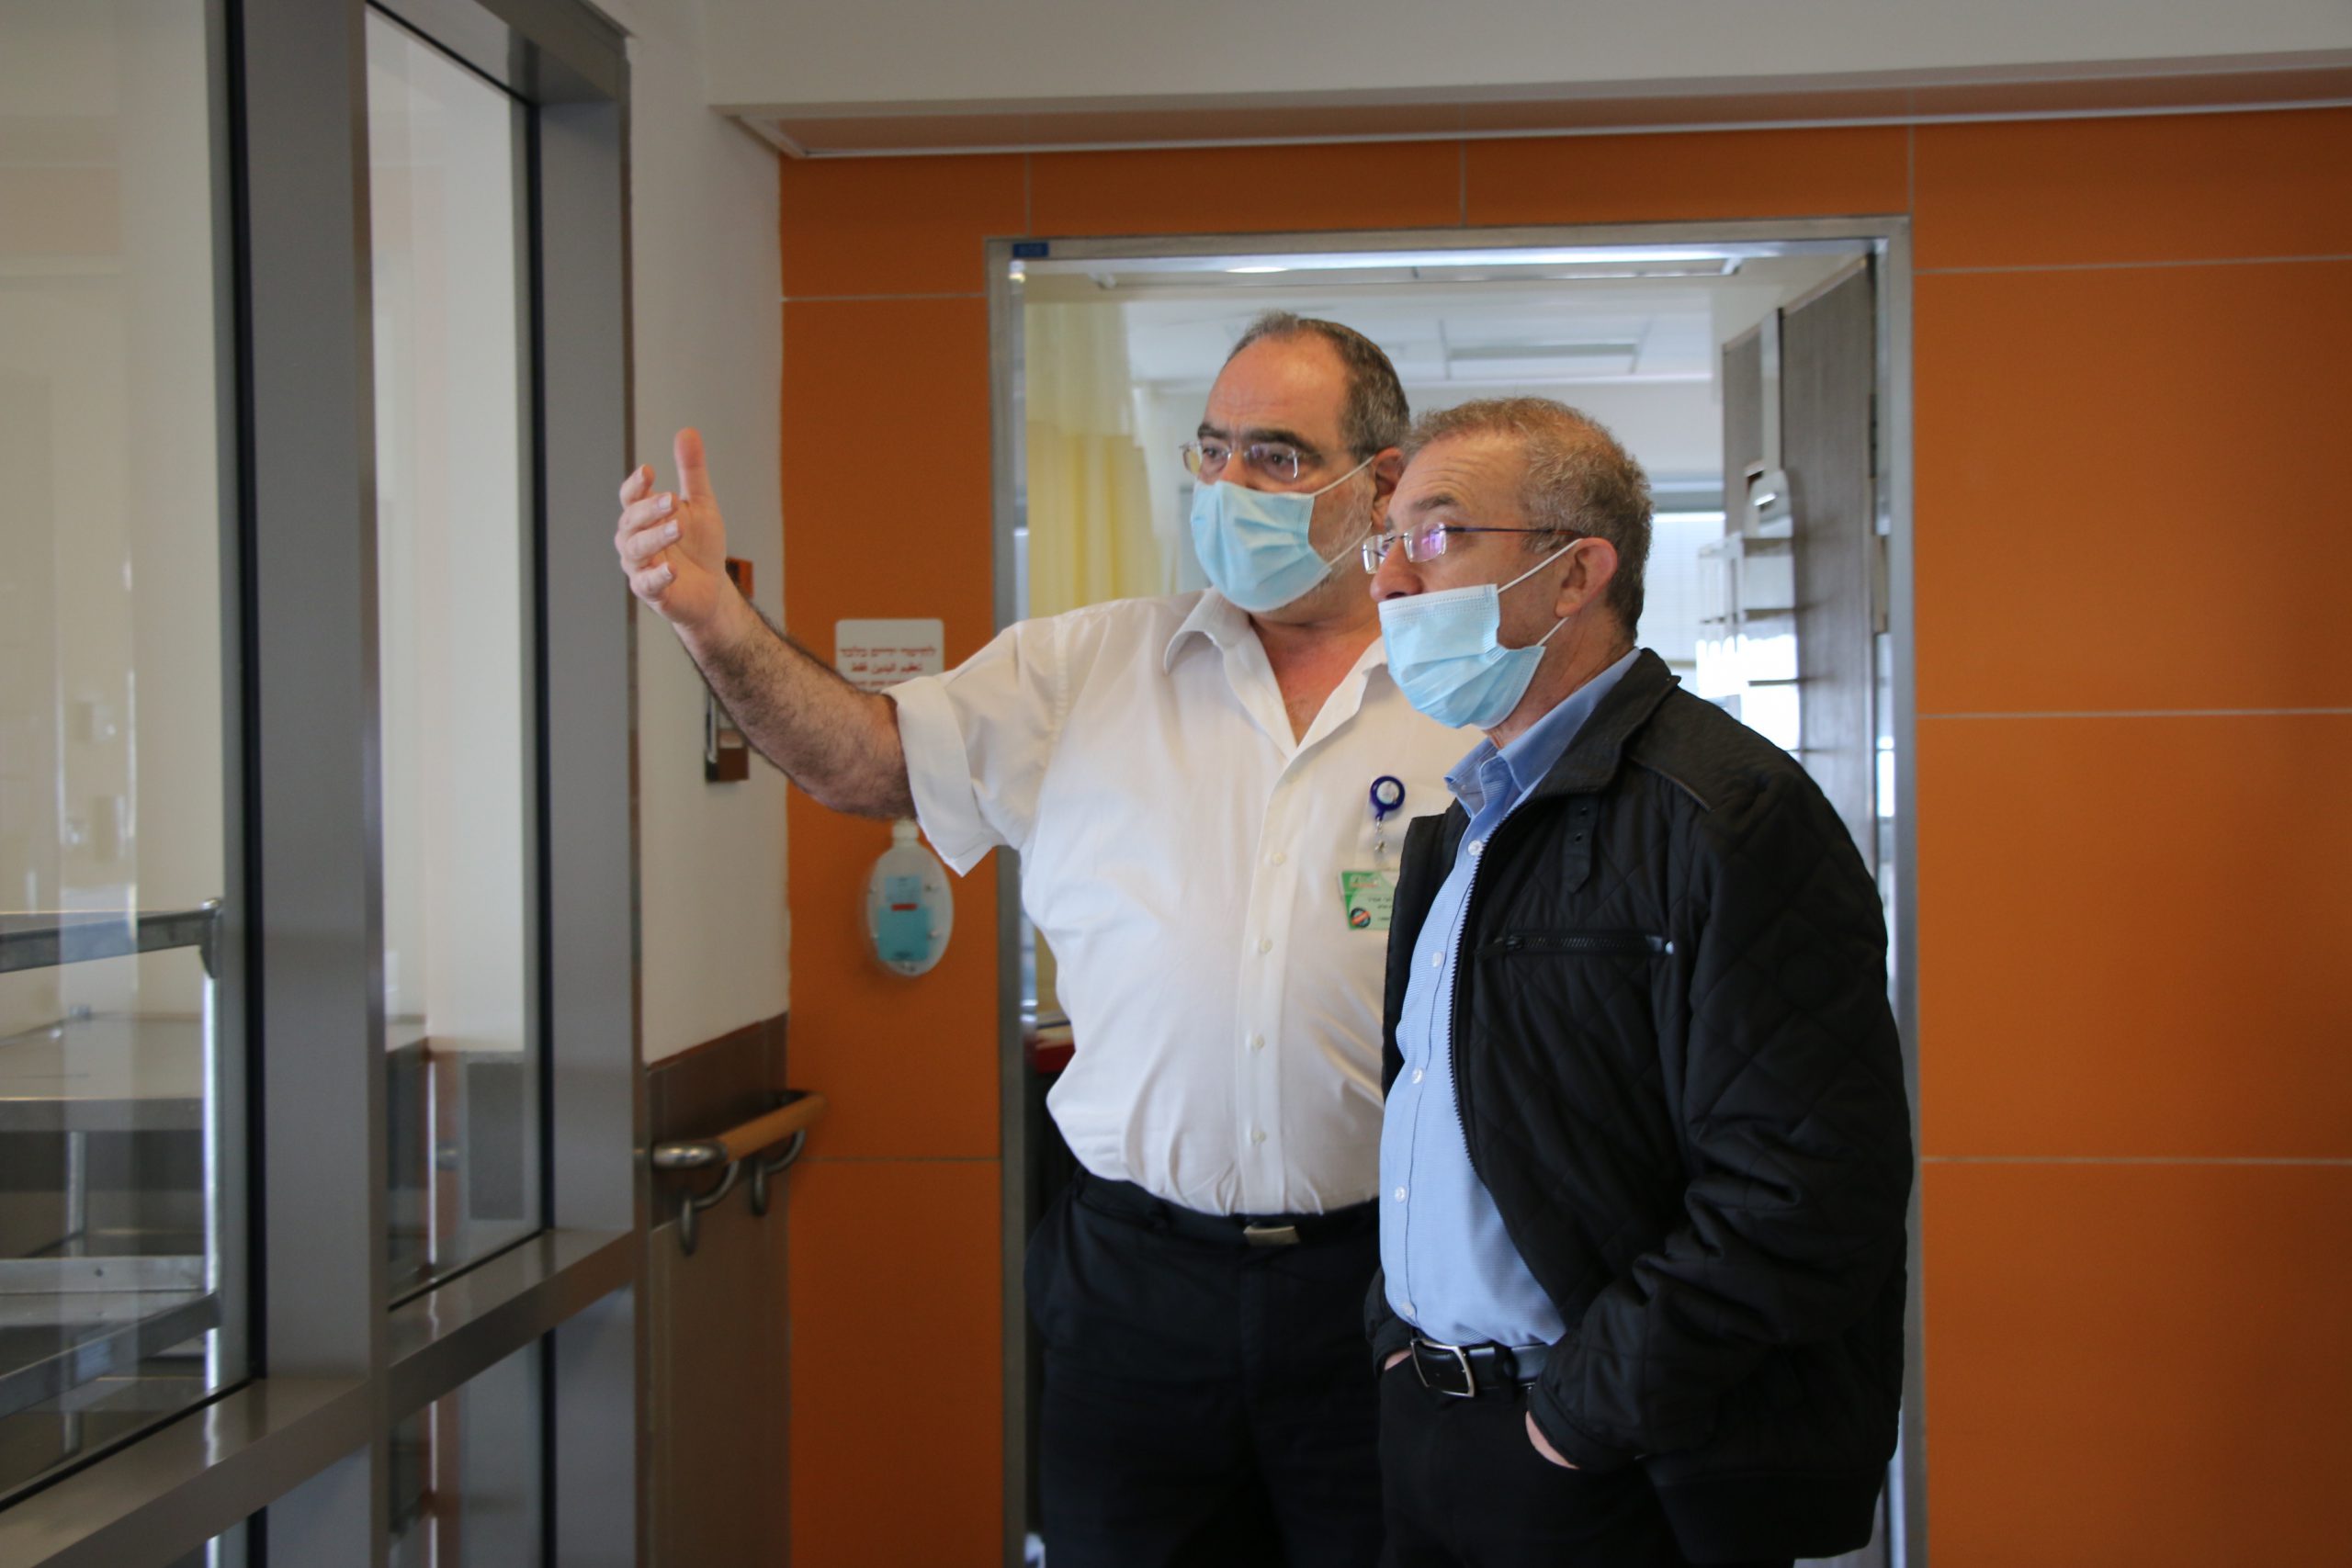 ביקורו הראשון של מנכ"ל המוסד לביטוח לאומי, מאיר שפיגלר במרכז הרפואי לוינשטיין.